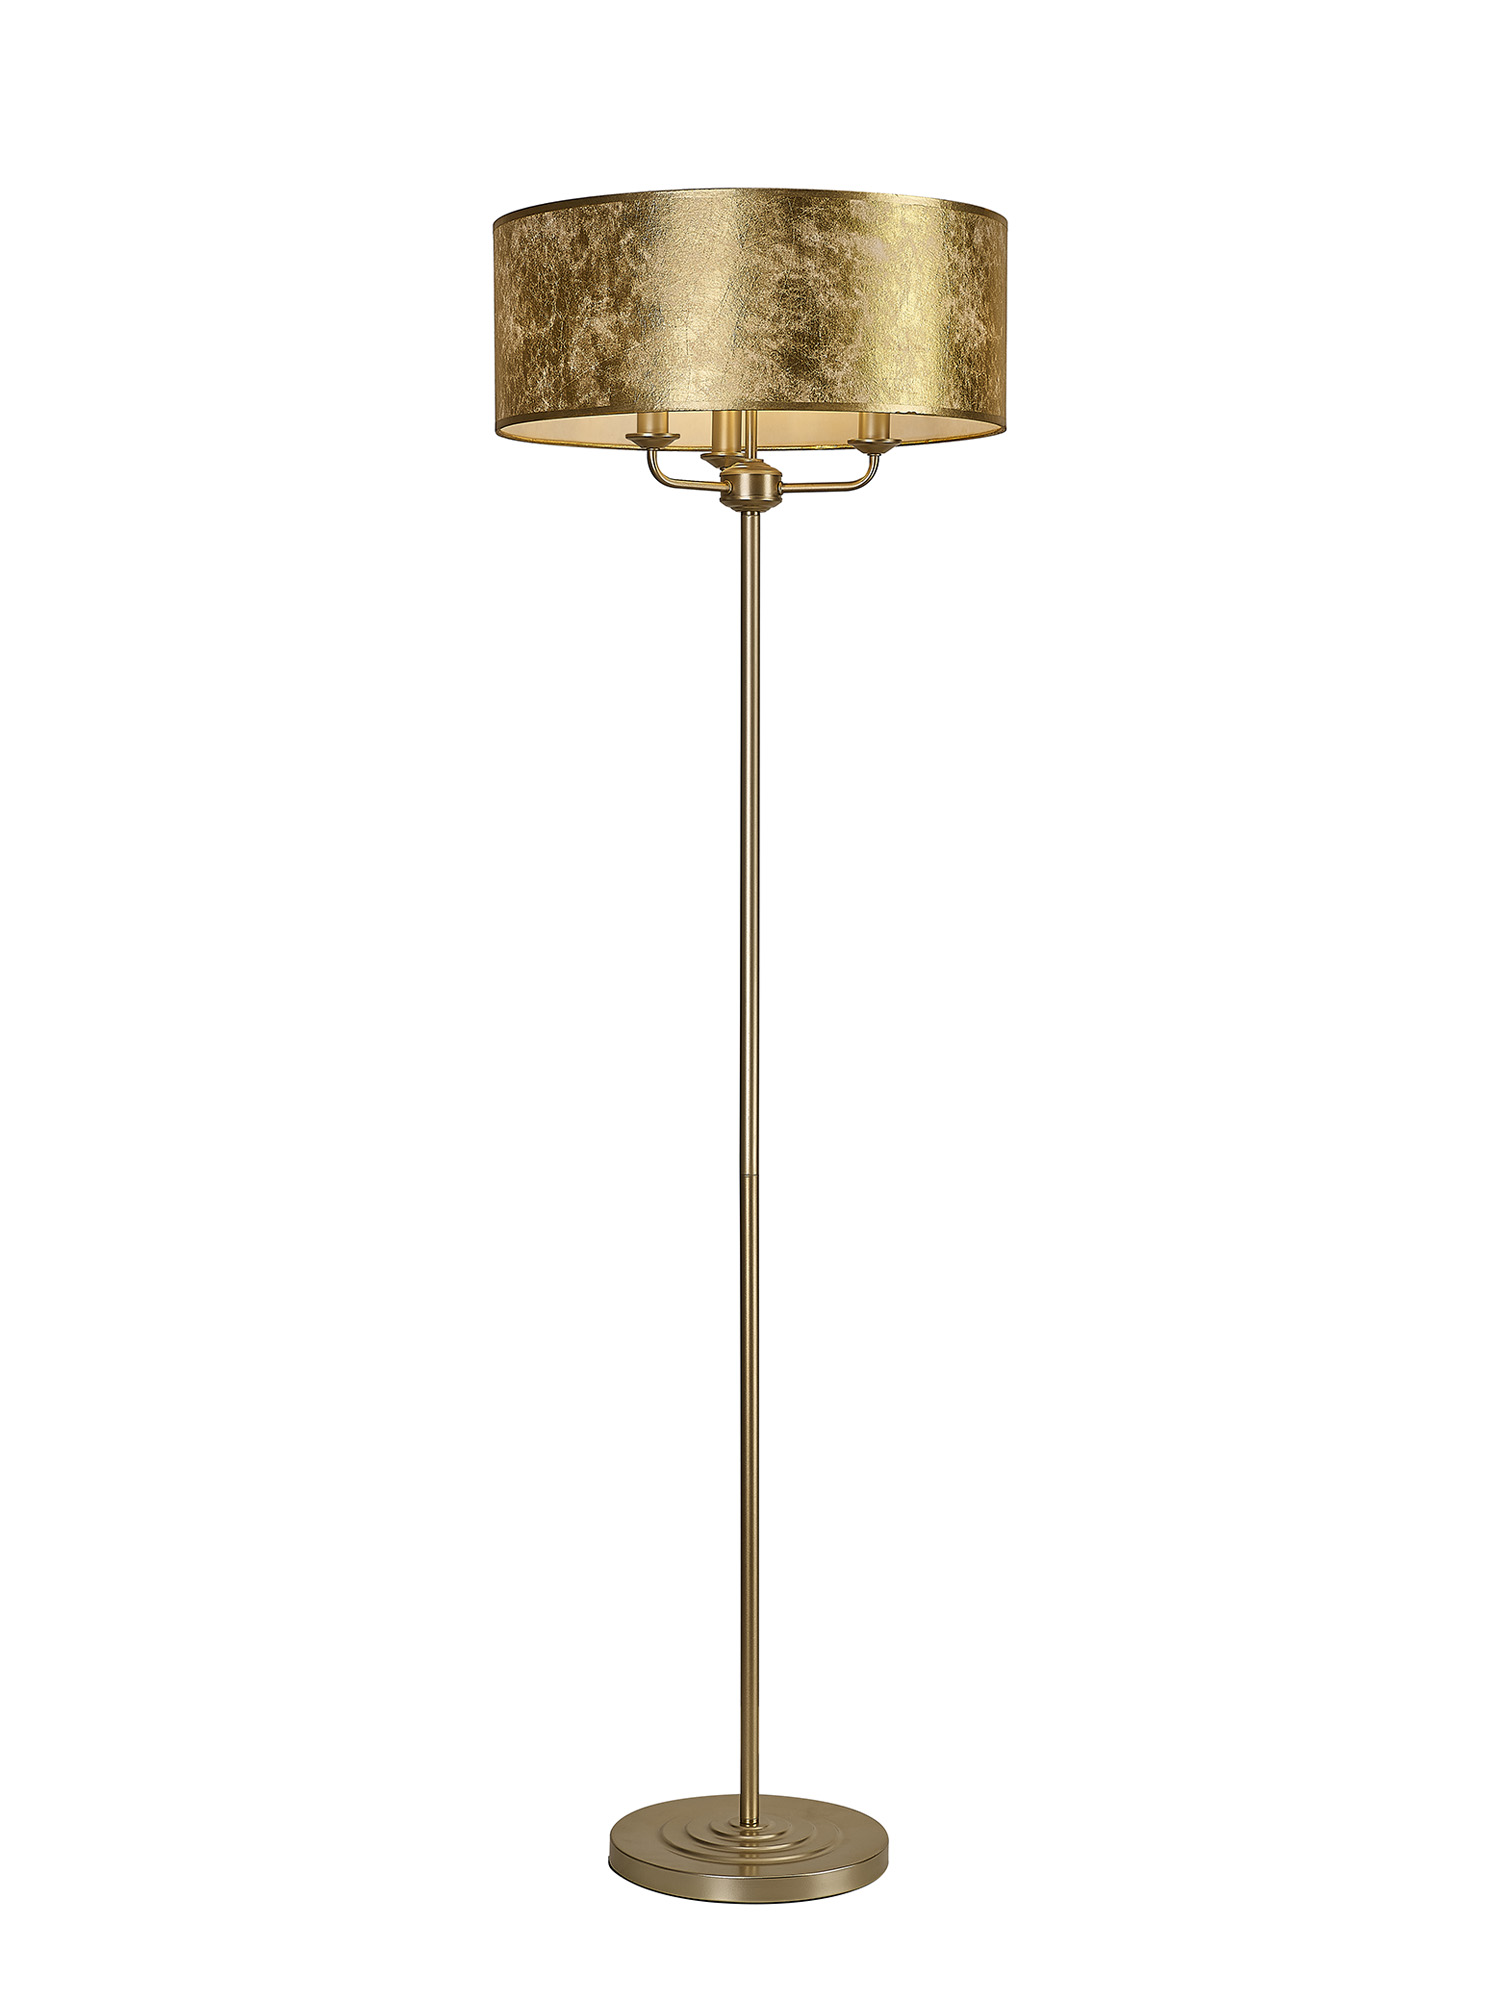 DK1005  Banyan 45cm 3 Light Floor Lamp Champagne Gold, Gold Leaf